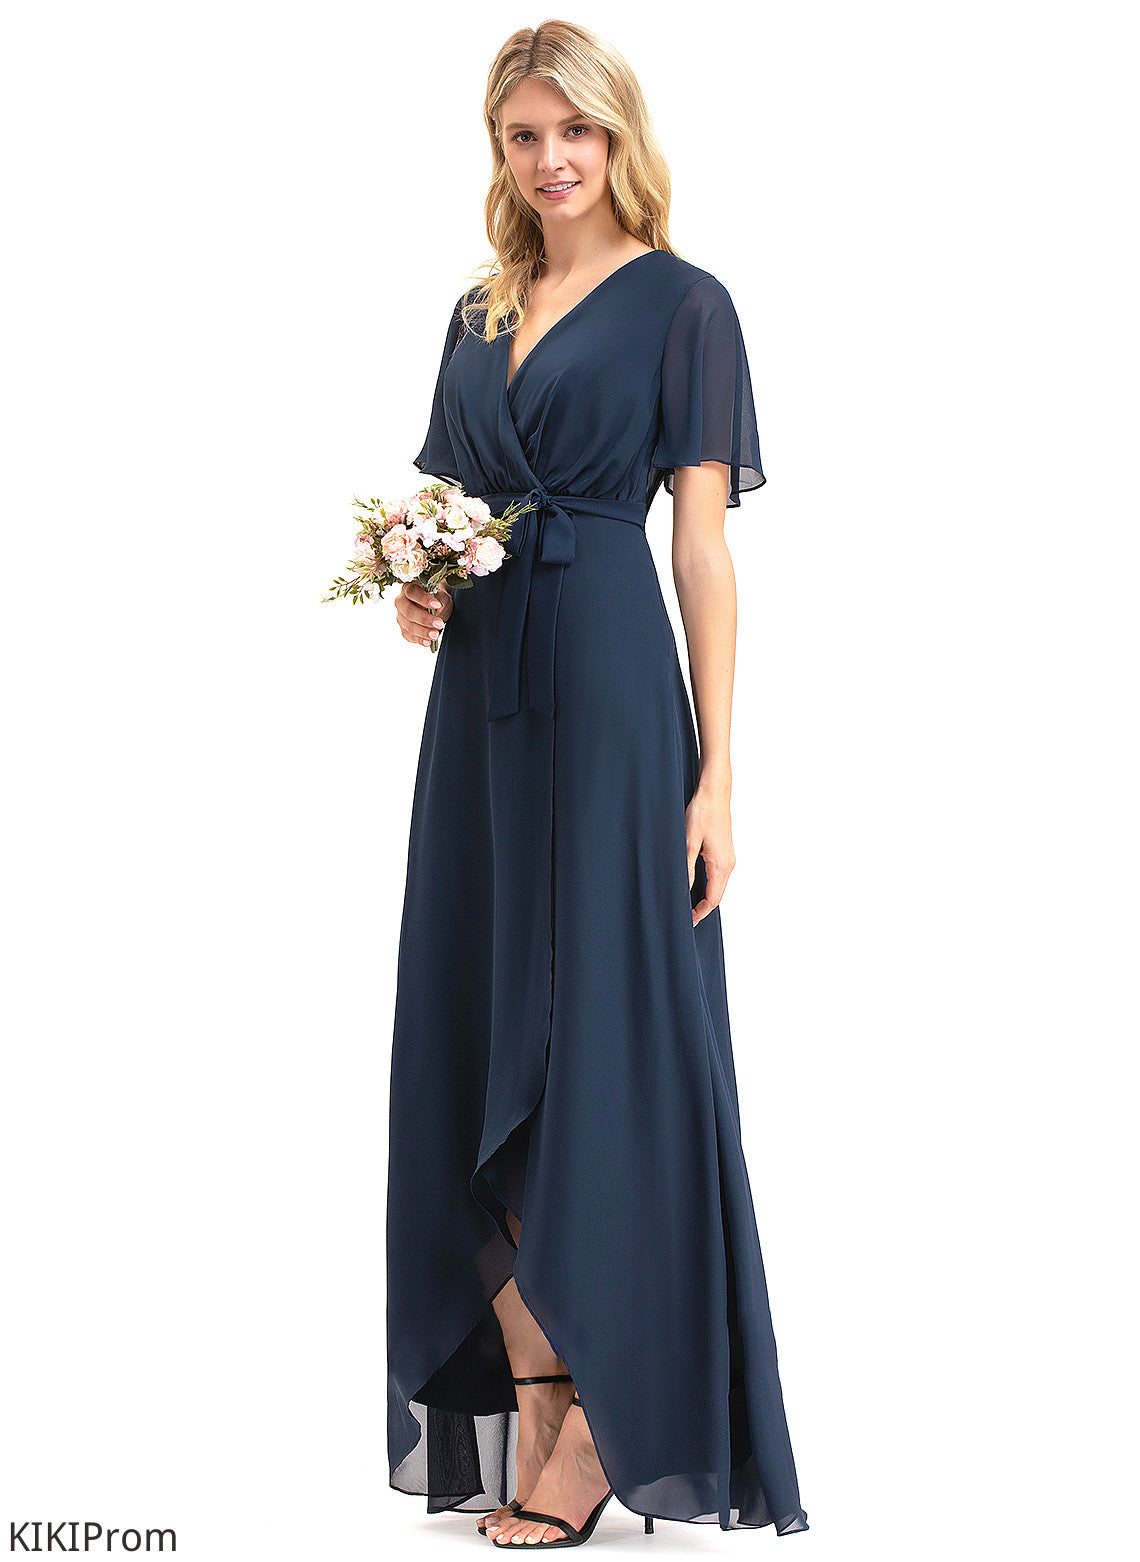 Silhouette Neckline A-Line V-neck Embellishment Fabric Length Asymmetrical Bow(s) Dania Scoop A-Line/Princess Bridesmaid Dresses